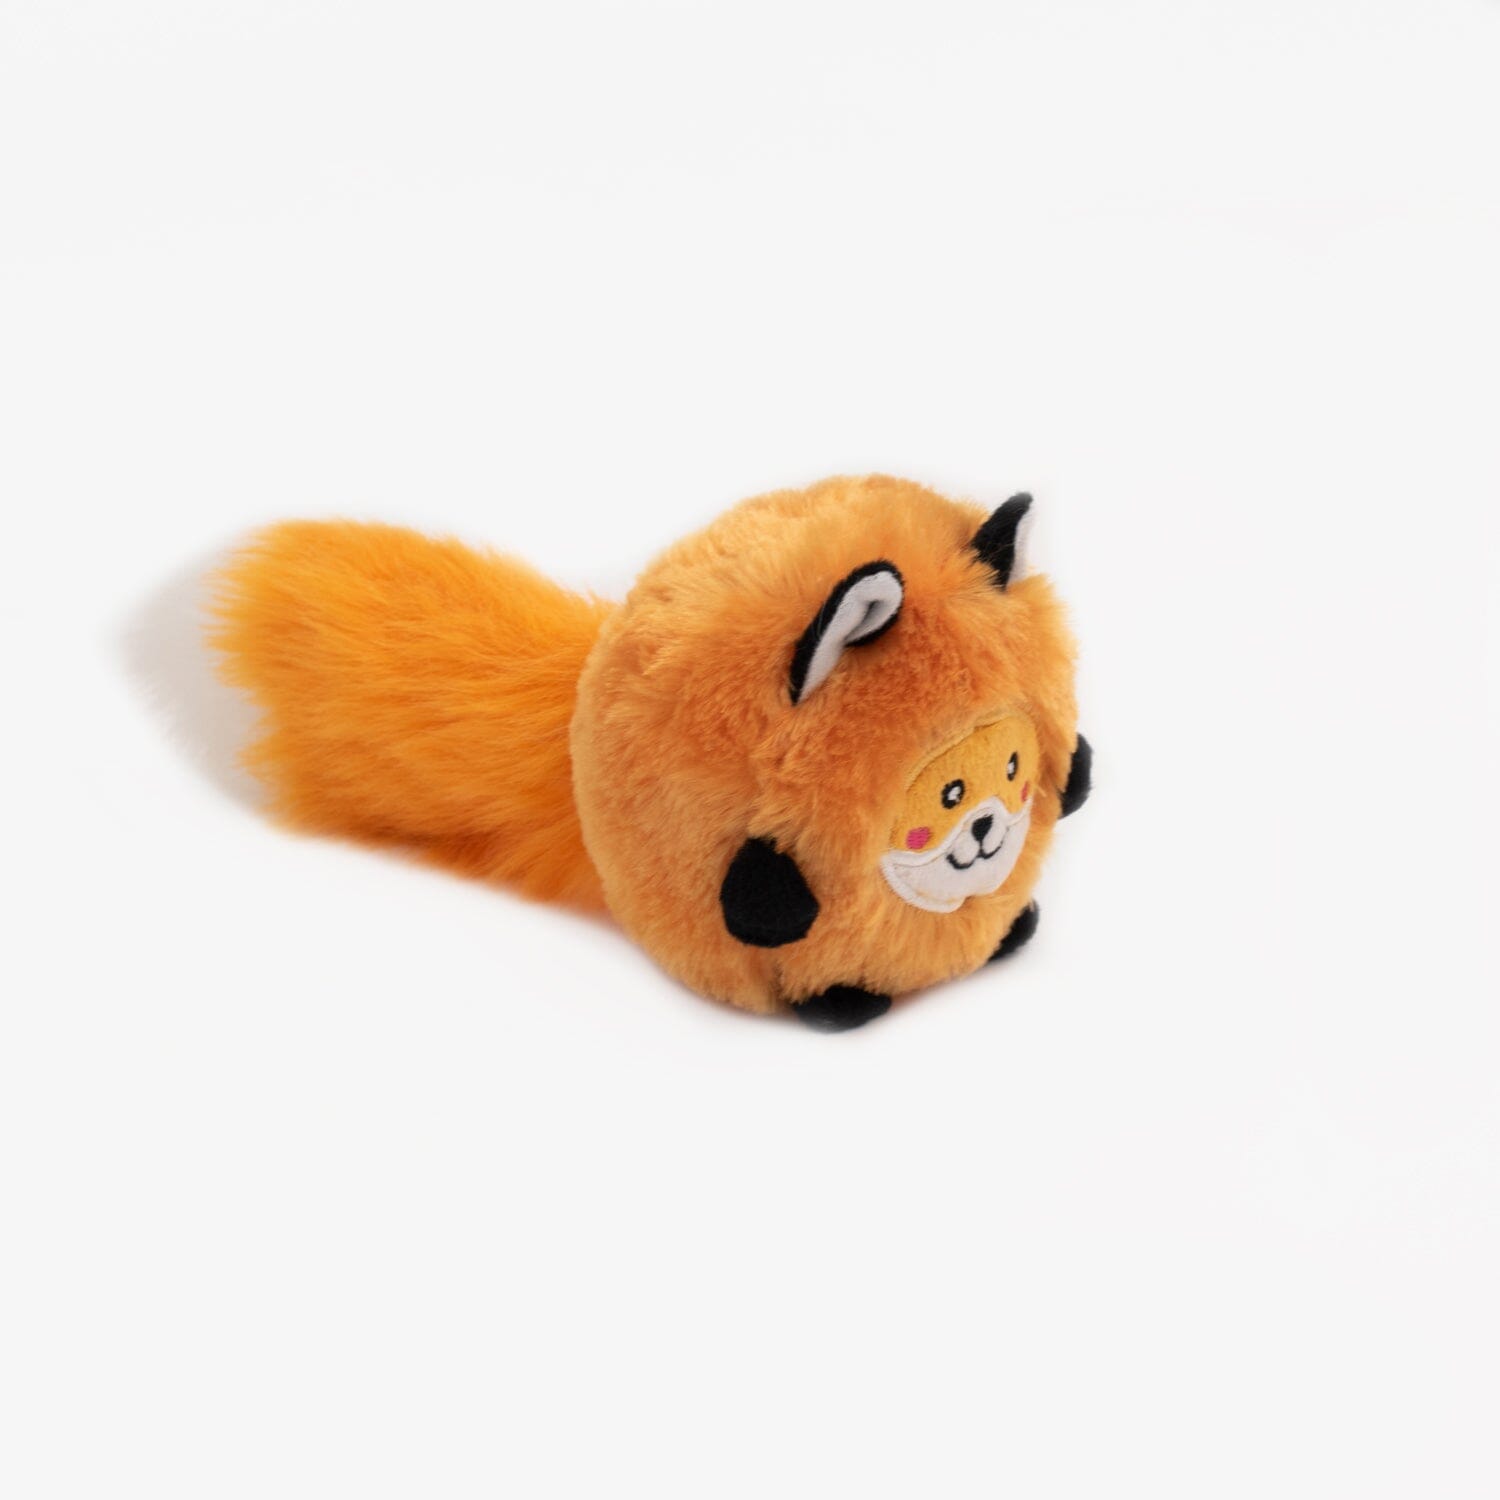 Throw Fox Soft Plush Dog Toy Animals & Pet Supplies ZippyPaws 